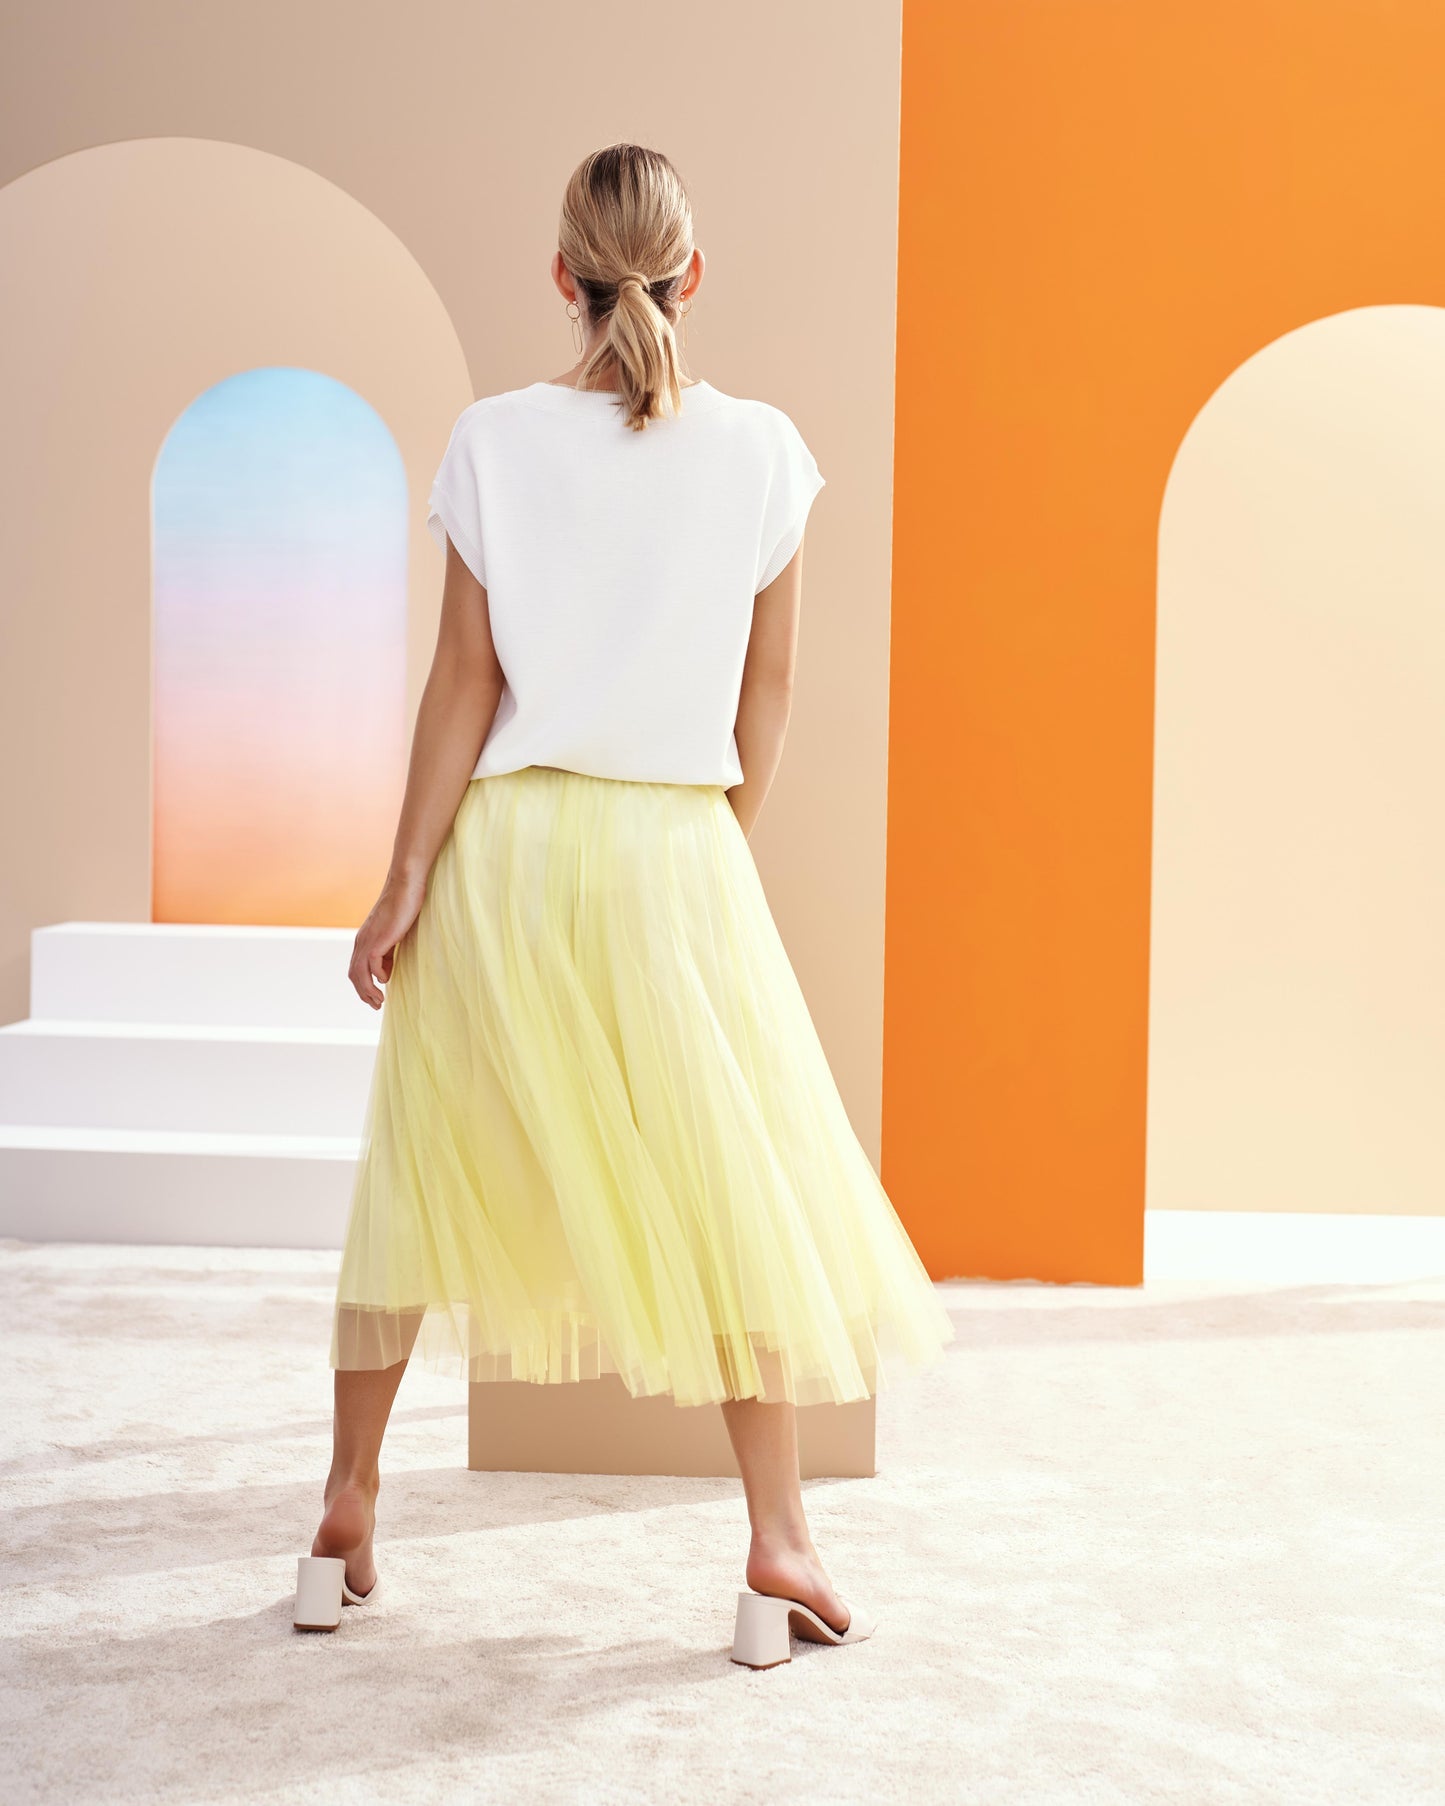 Reni Yellow Skirt